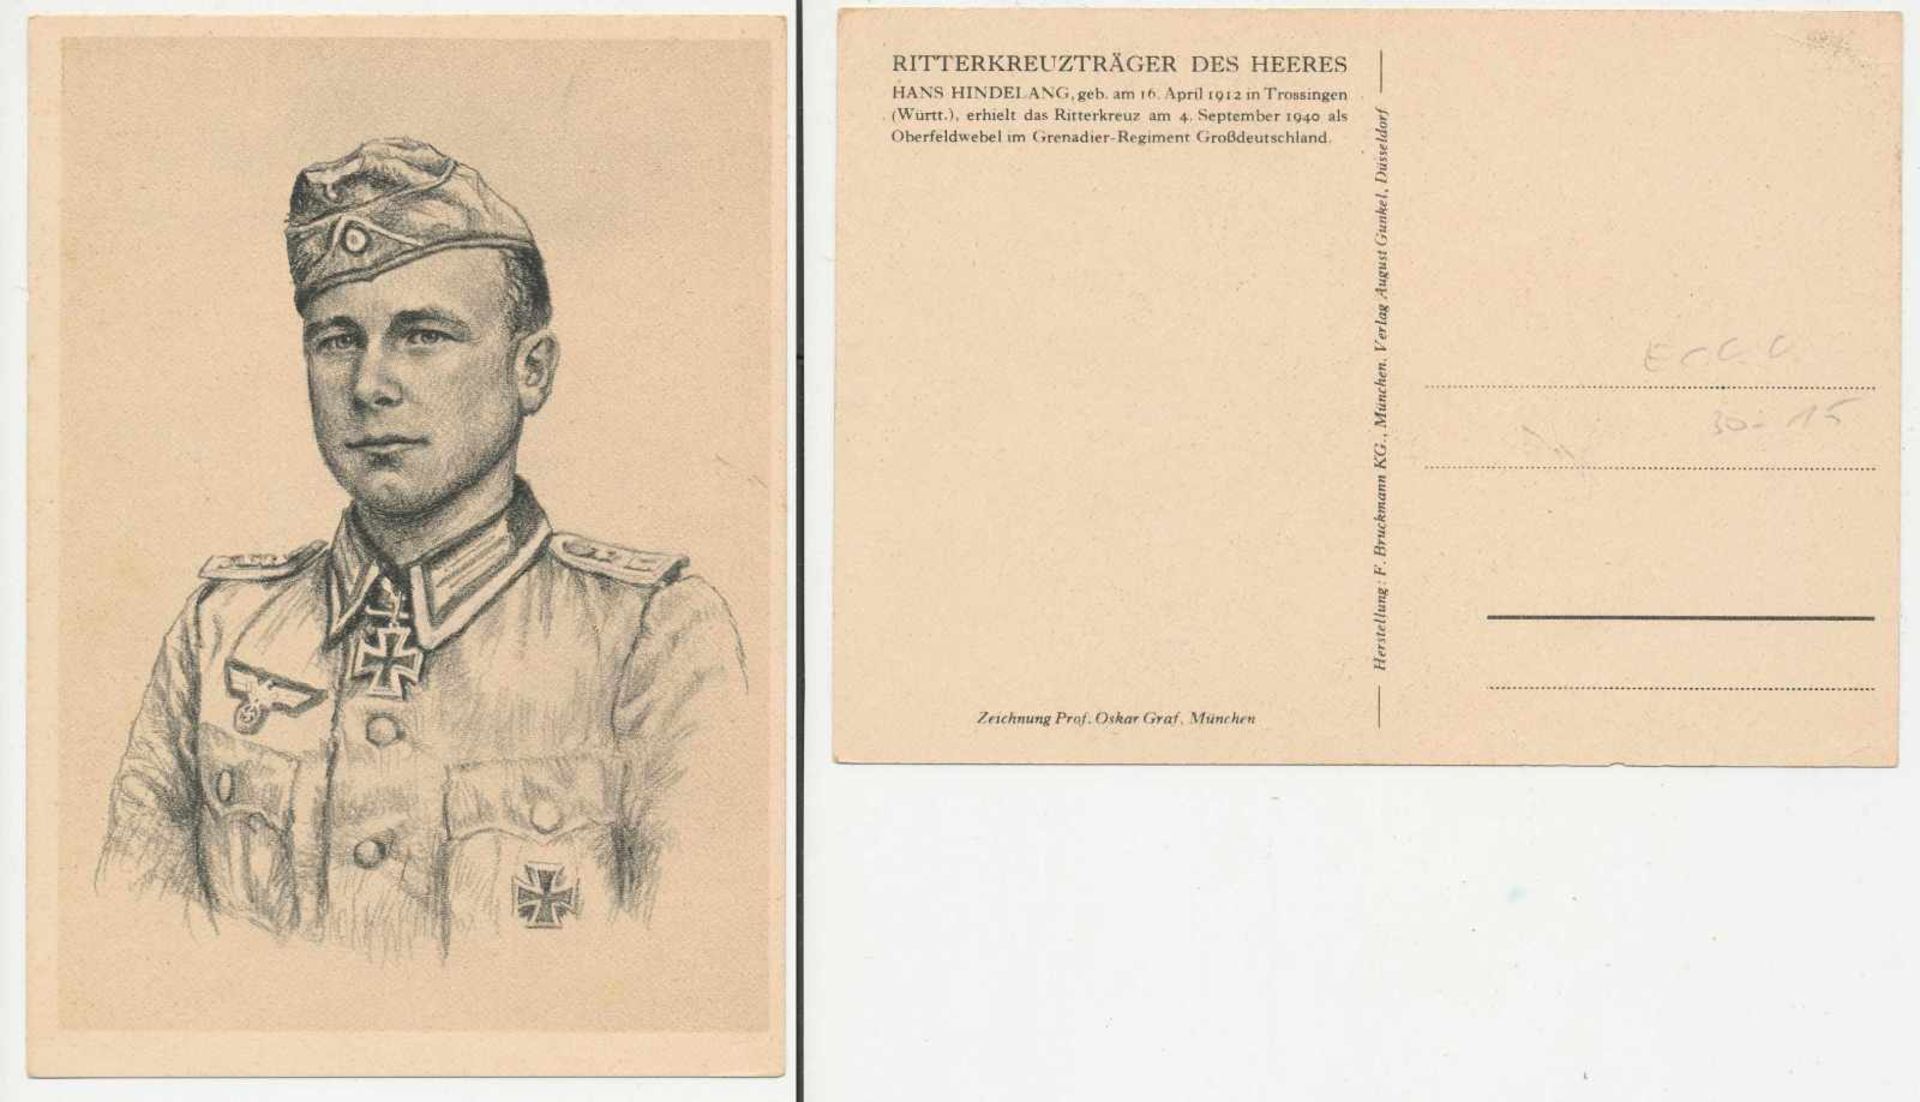 1 Postkarte, großes Format, br/w, Ritterkreuzträger des Heers - Hans Hindelang, Zeichnung Prof.